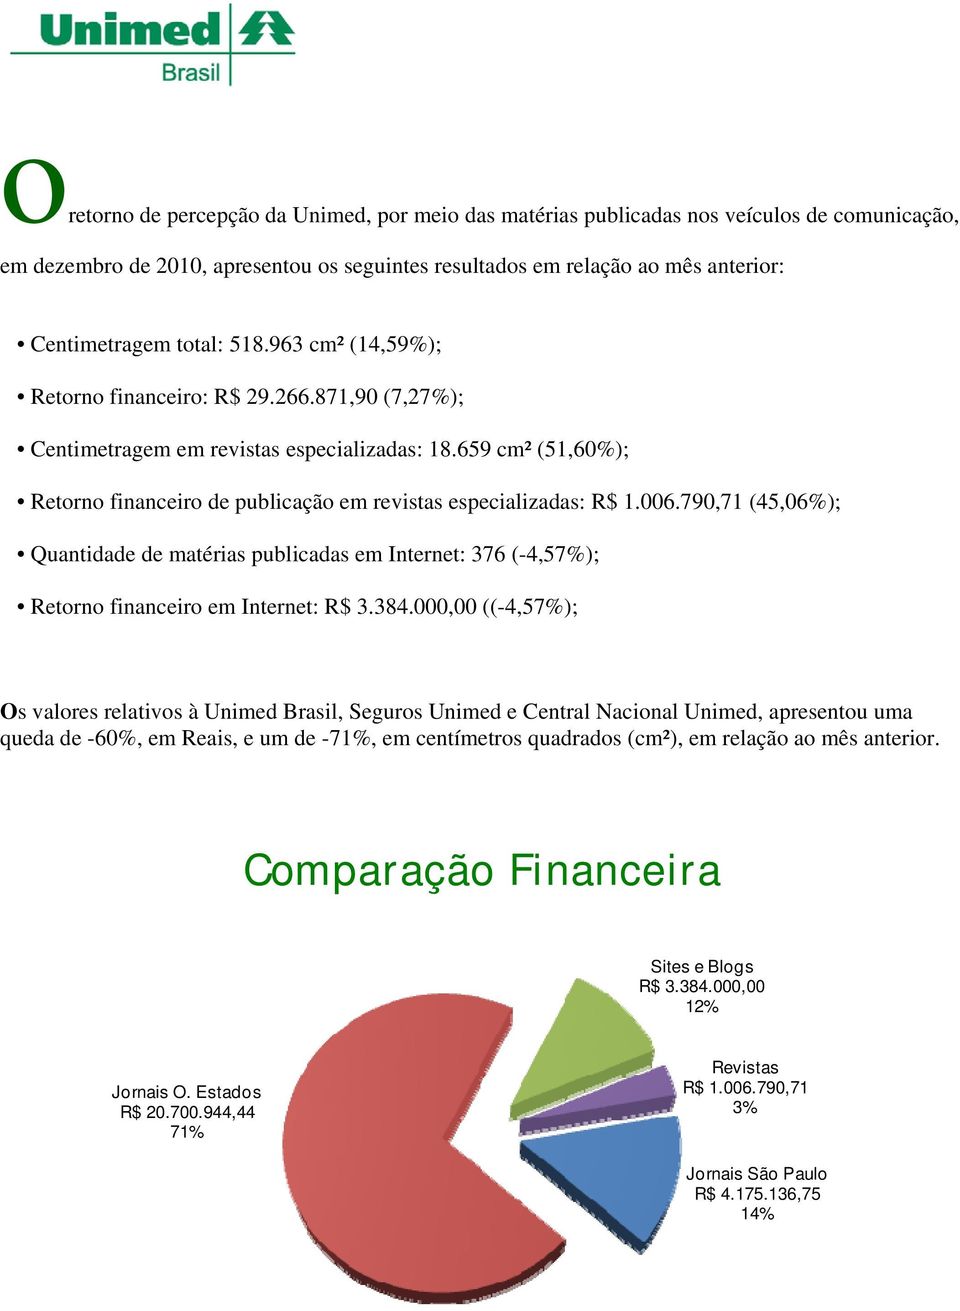 006.790,71 (45,06%); Quantidade de matérias publicadas em Internet: 376 (-4,57%); Retorno financeiro em Internet: R$ 3.384.